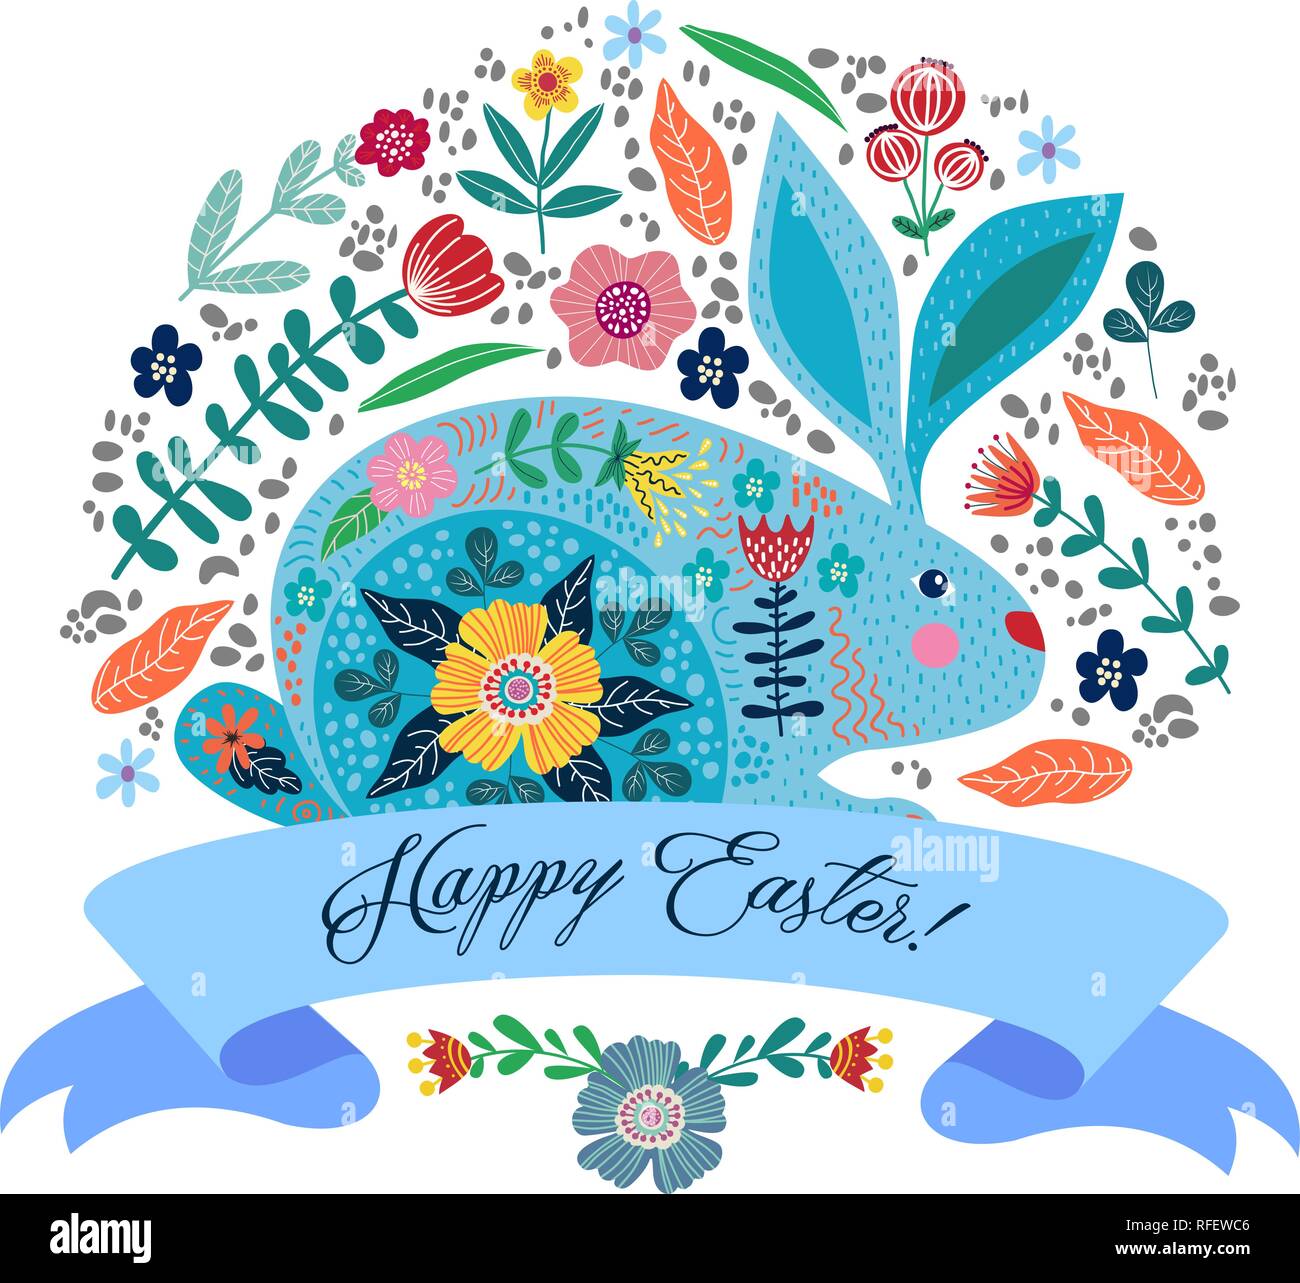 Felice Pasqua. Cartoon carino coniglio folk con fiori e nastri con testo isolato su uno sfondo bianco. Illustrazione Vettoriale Illustrazione Vettoriale